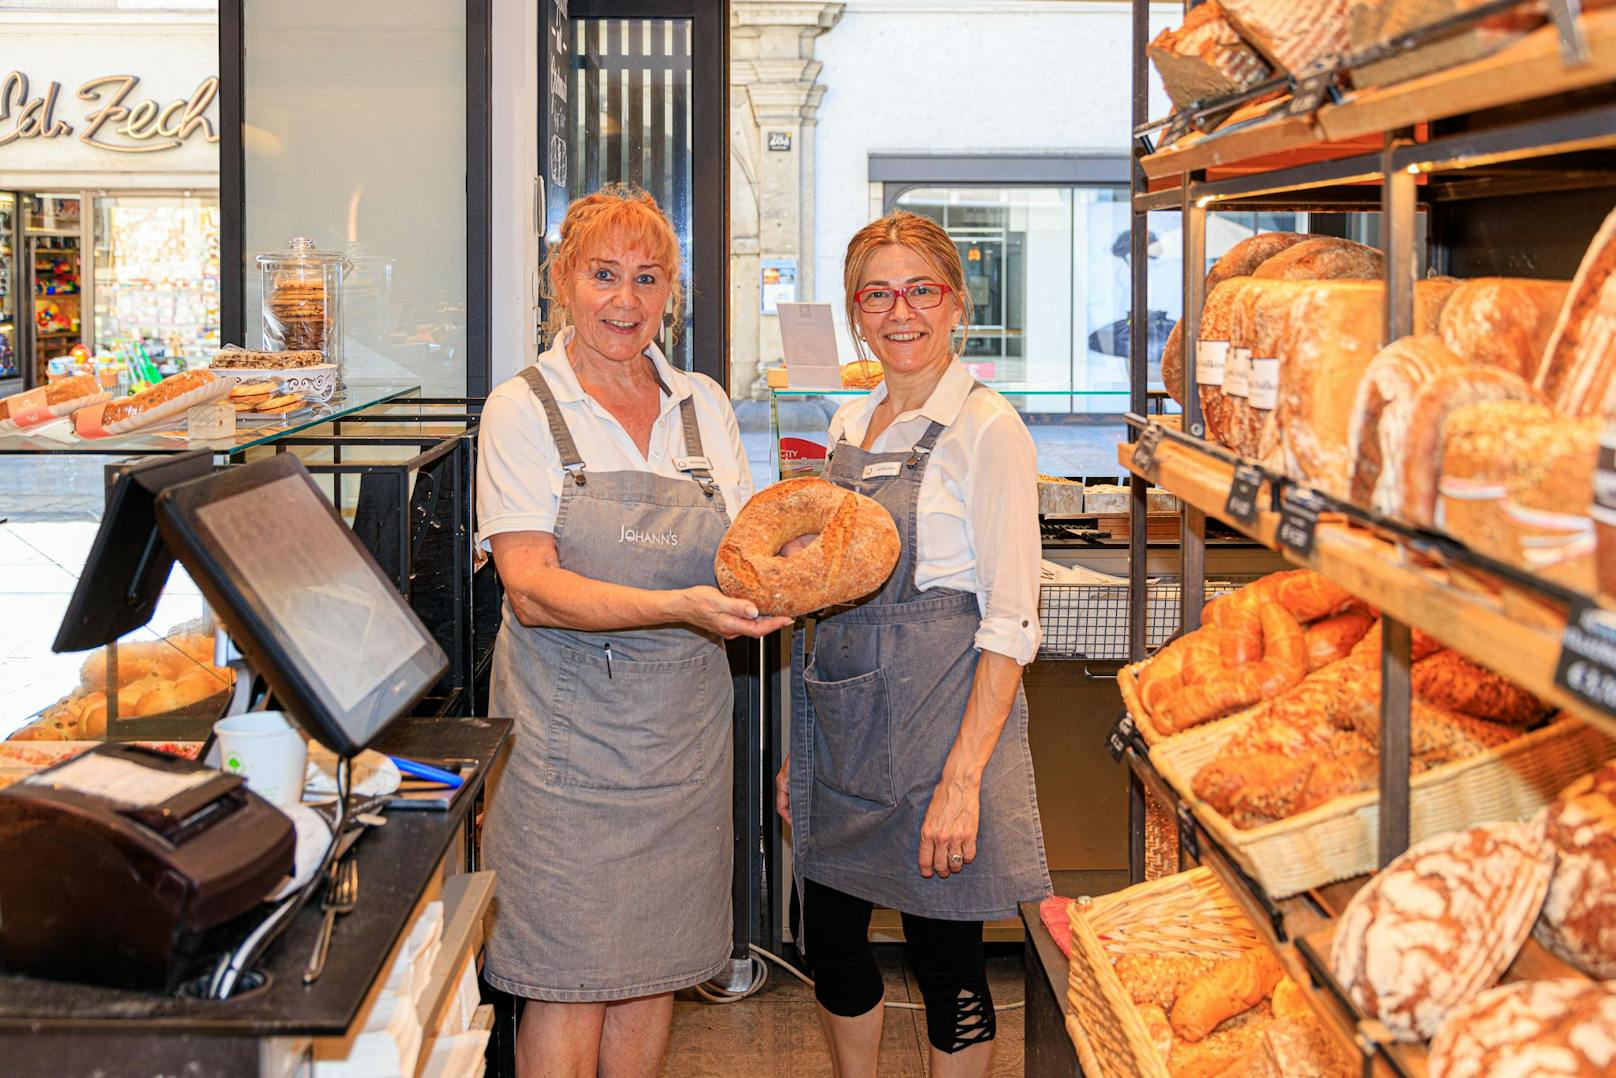 Filialleiterin Marianne Haller (l.) neben Mitarbeiterin Gordana Popovic in der Linzer Bäckerei Winkler.